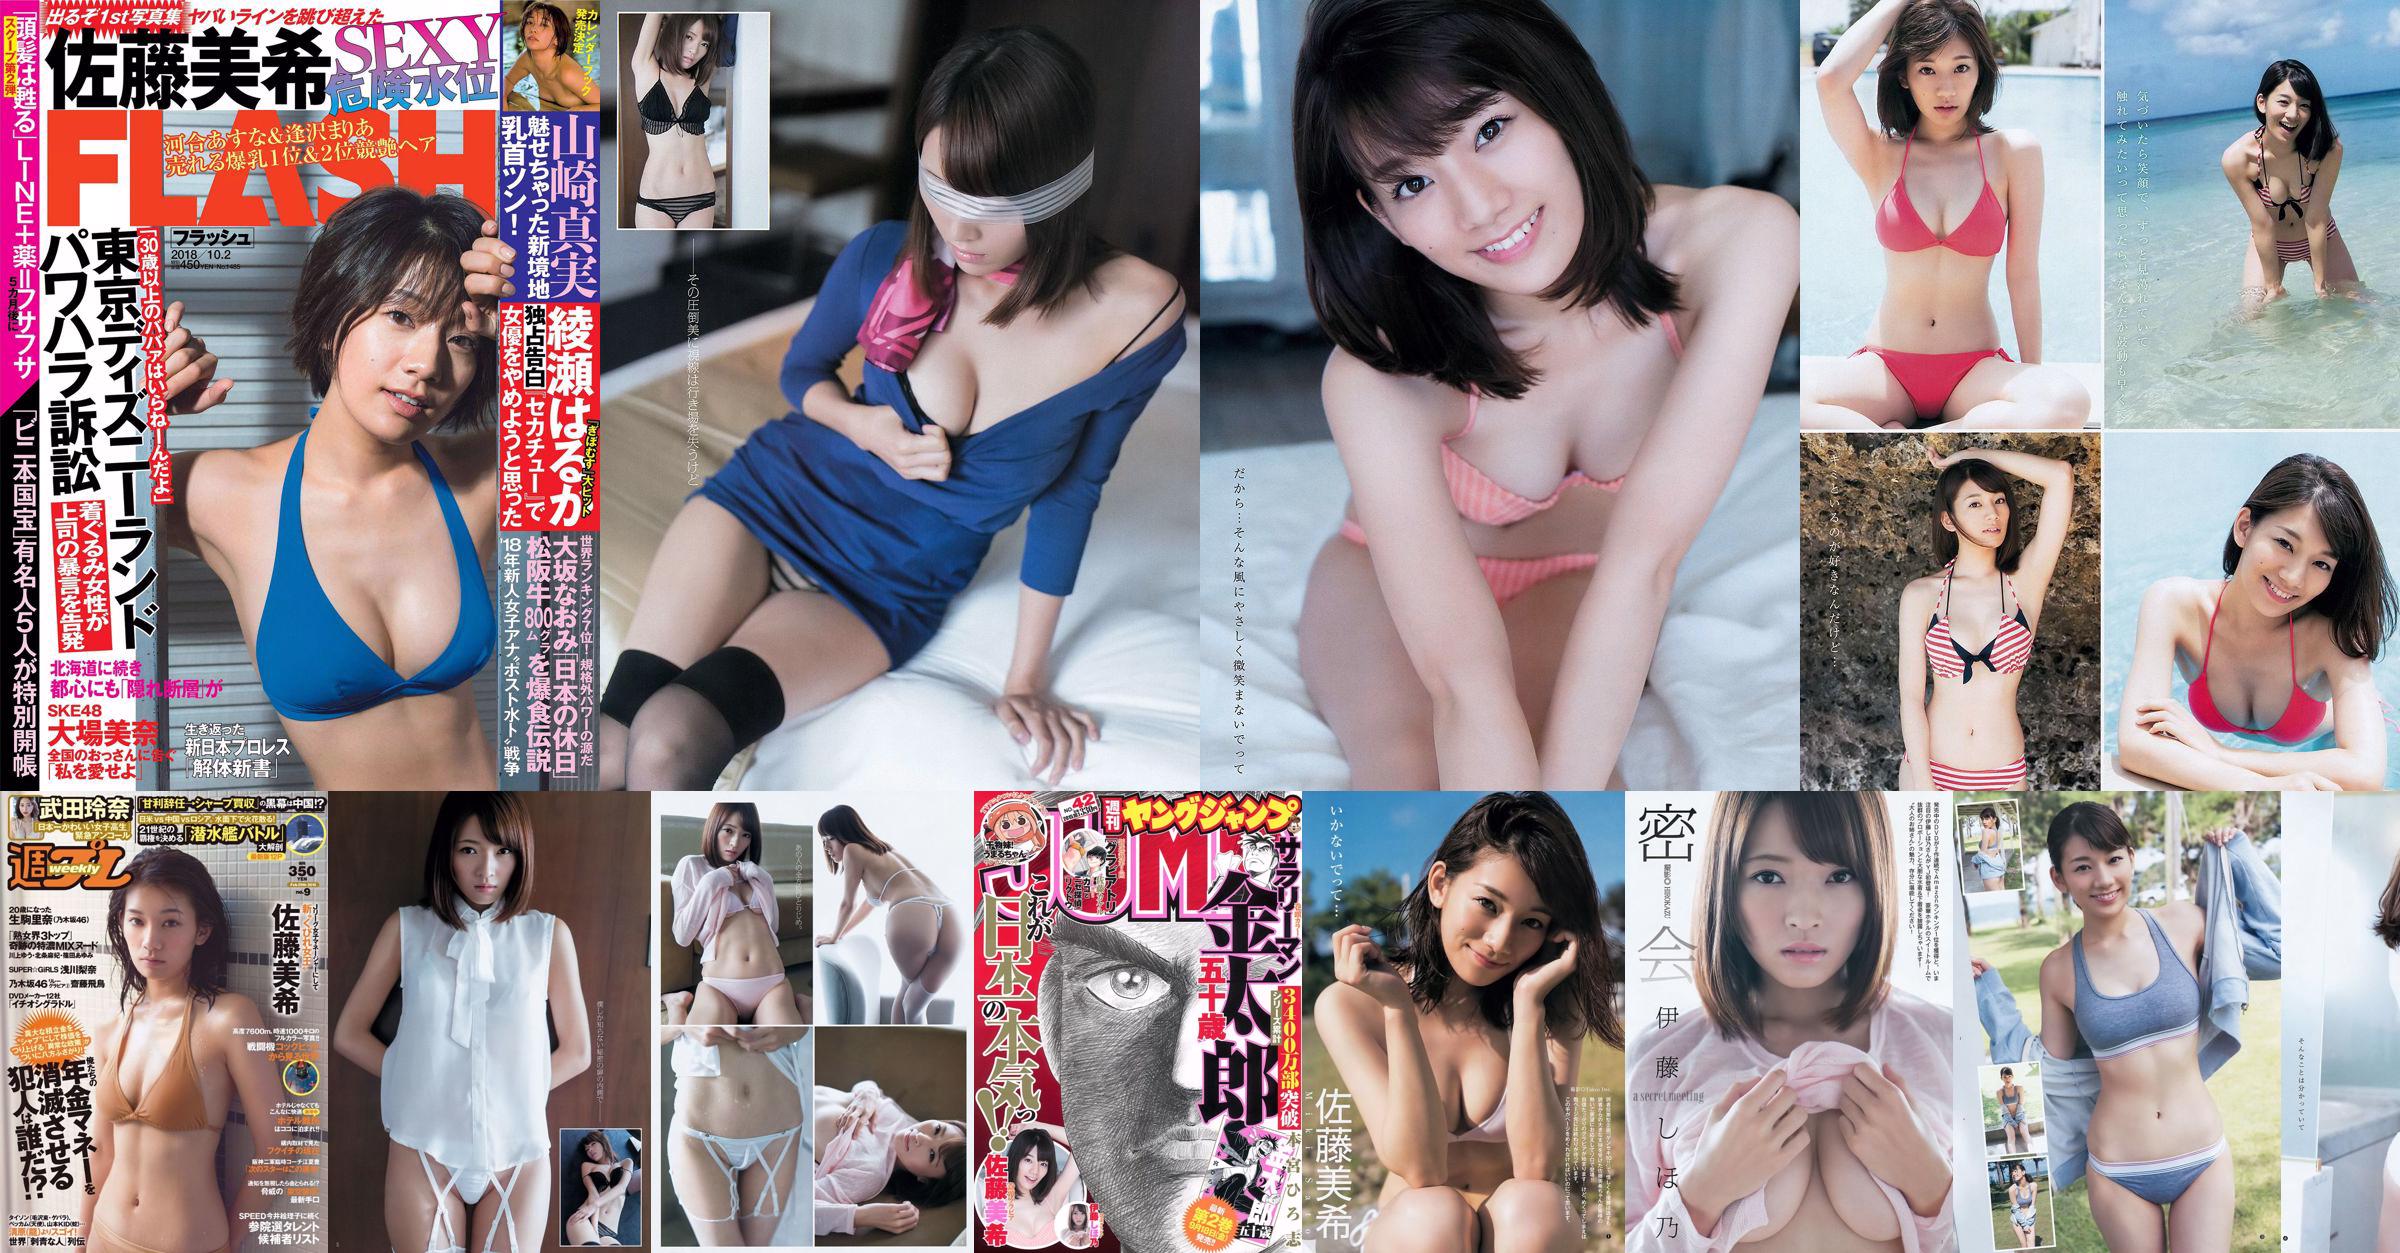 Miki Sato Rena Takeda Rina Ikoma Rina Asakawa Asuka Saito Masami Ichikawa [Wekelijkse Playboy] 2016 No.09 foto No.a83d84 Pagina 3